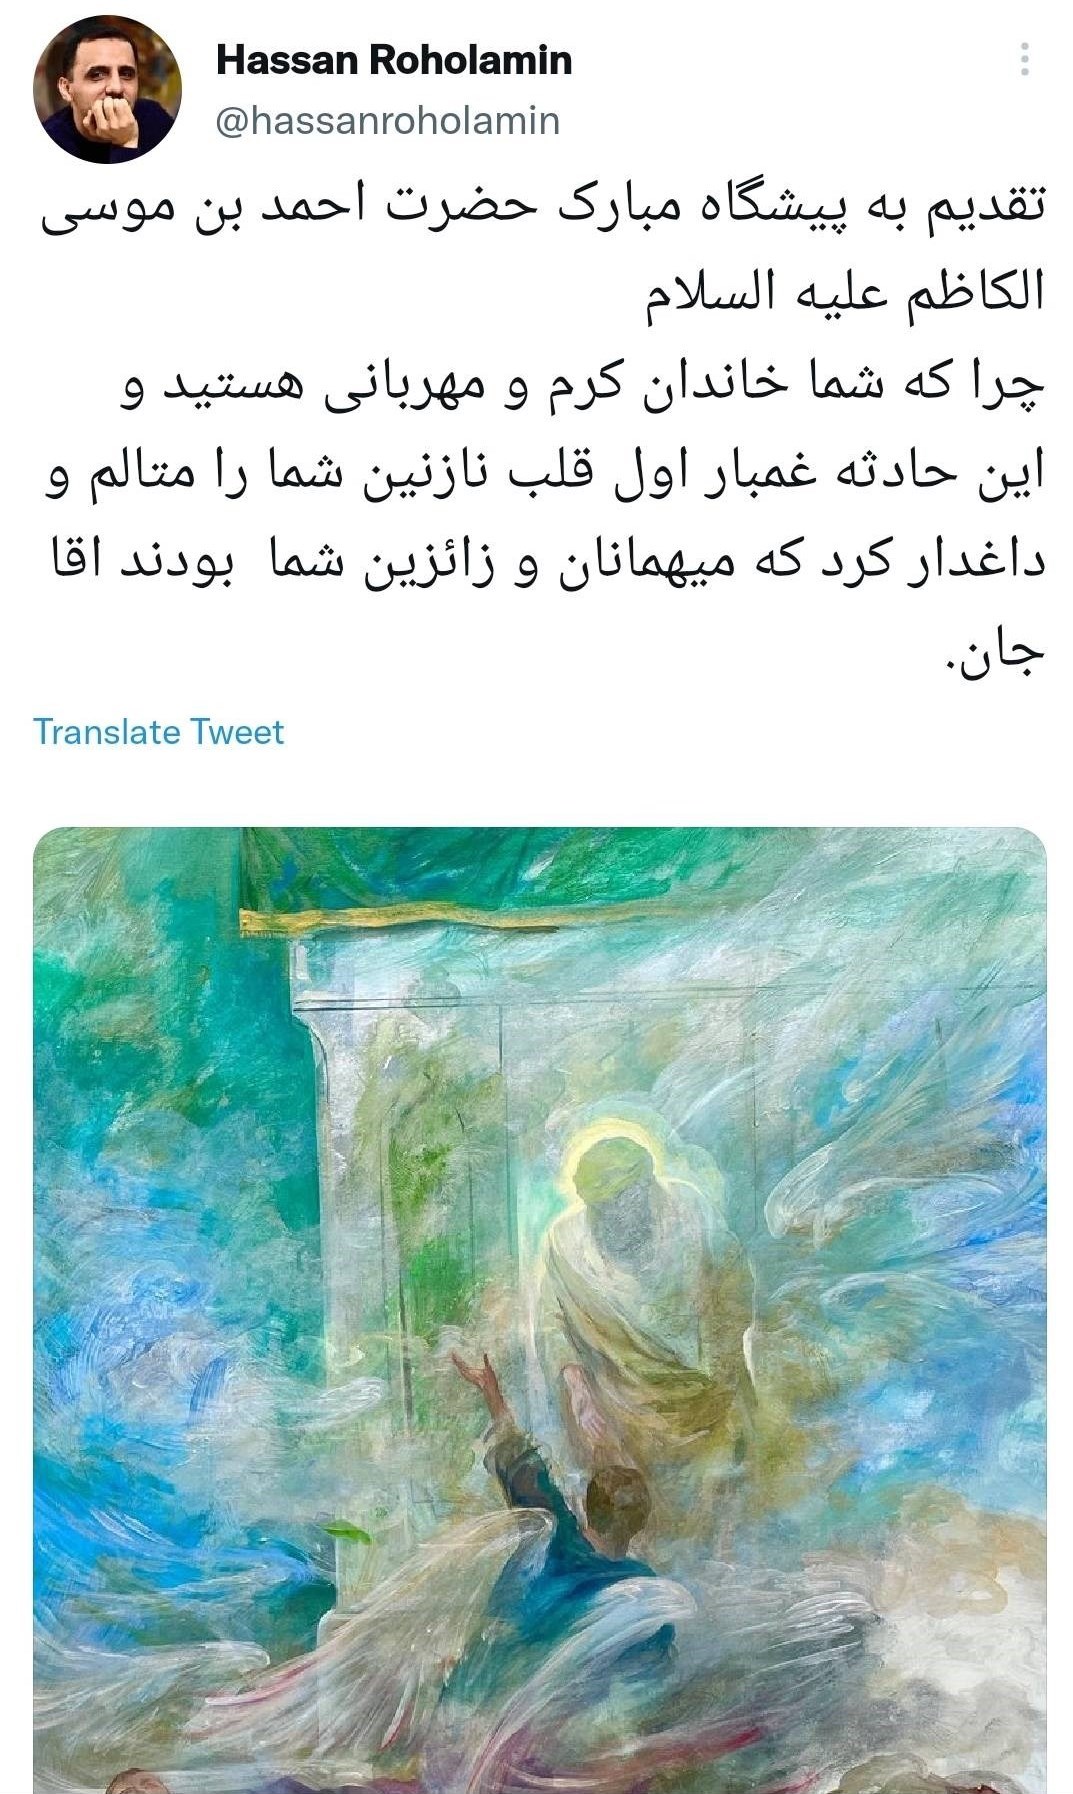 نقاشی , حسن روح الامین , حمله تروریستی به شاهچراغ شیراز , آرتین سرایداران , 